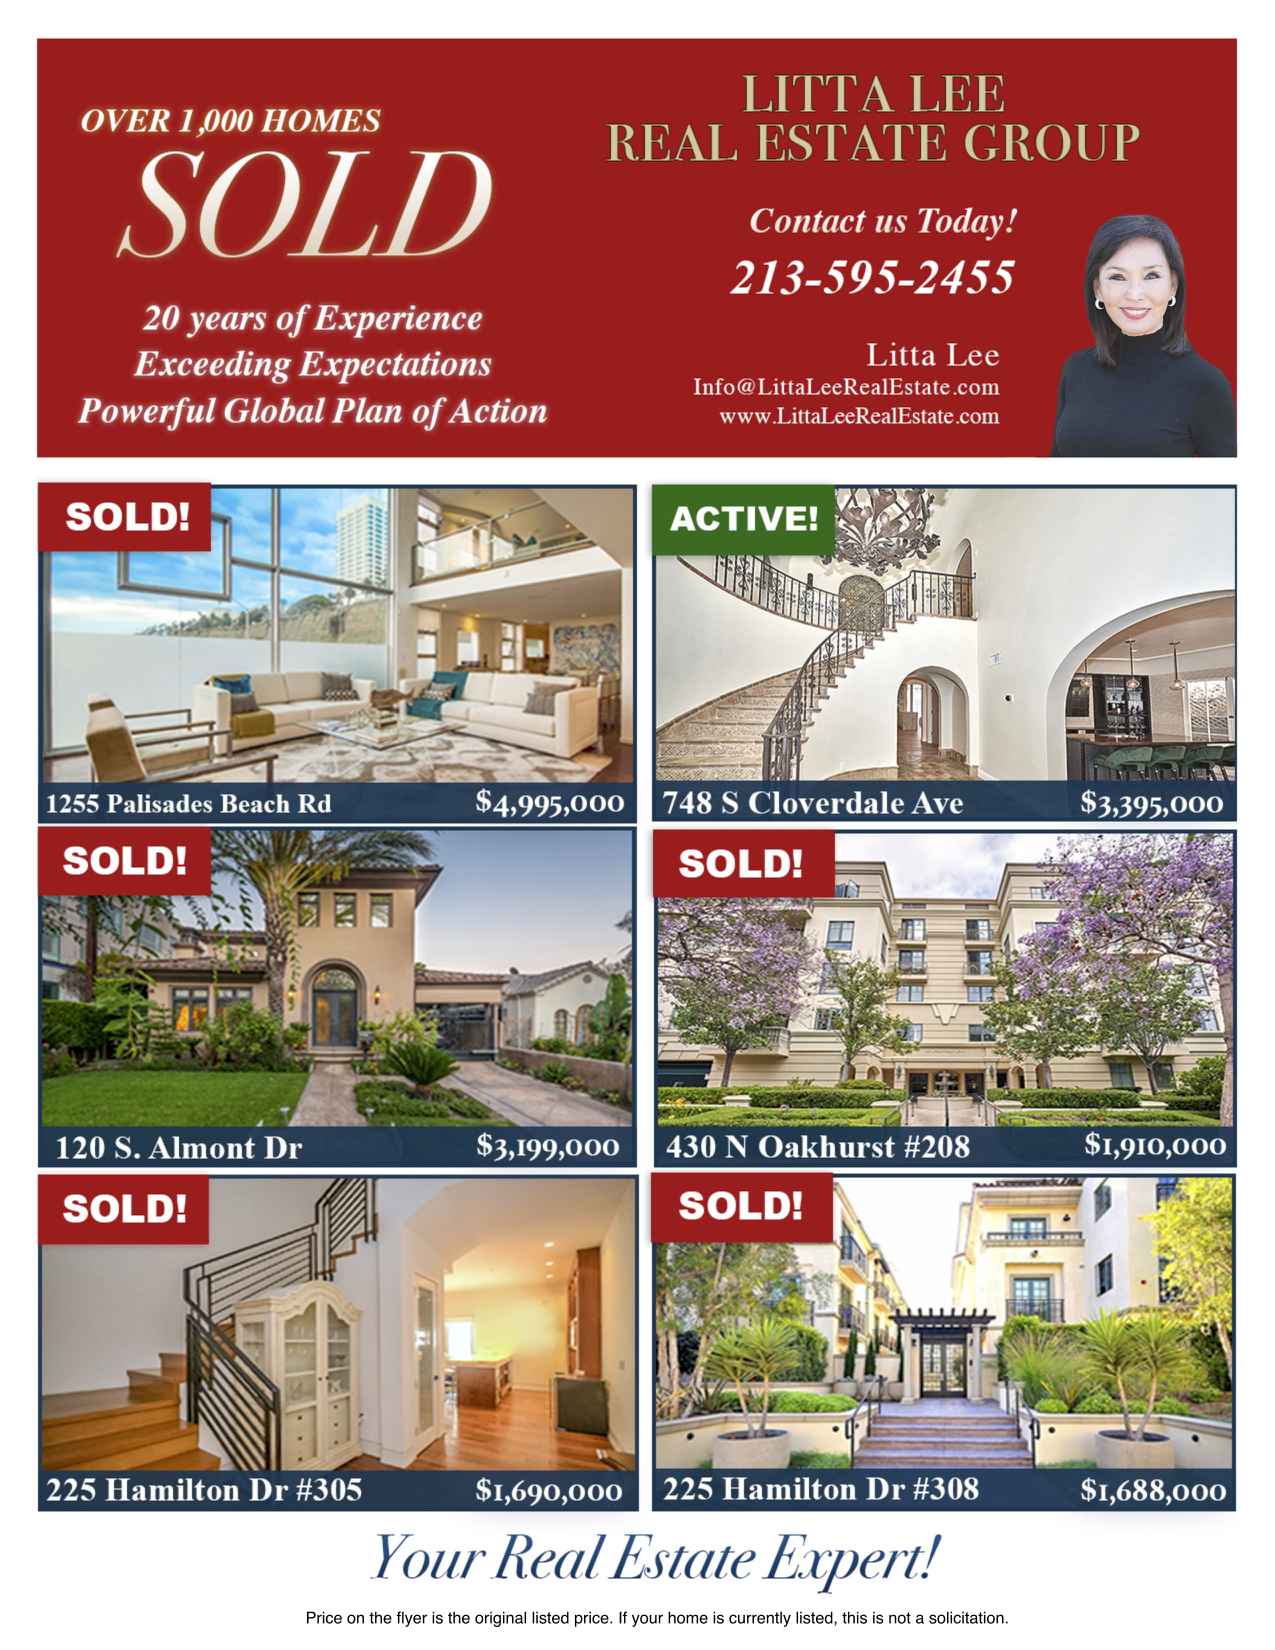 Sold Properties